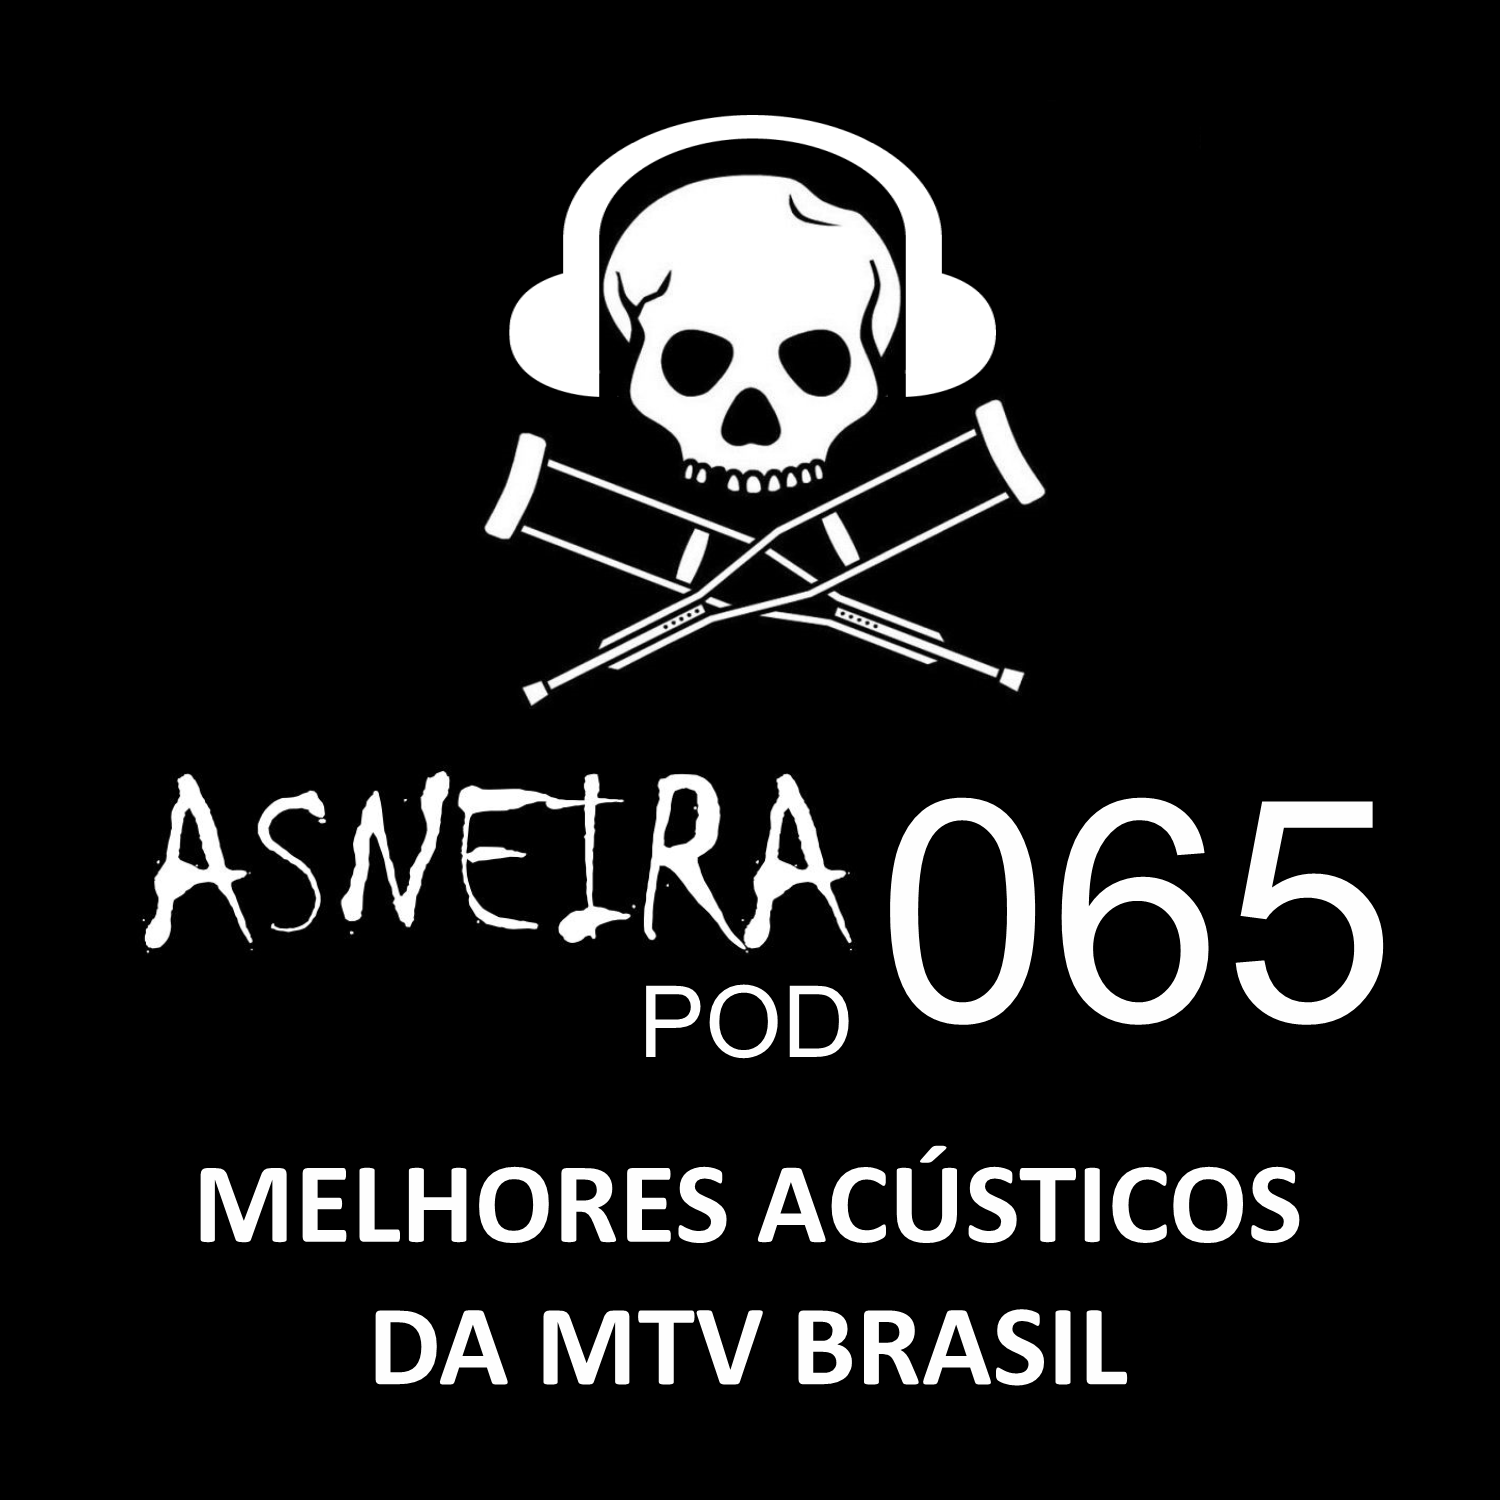 AsneiraPOD 065 – Melhores Acústicos da MTV Brasil